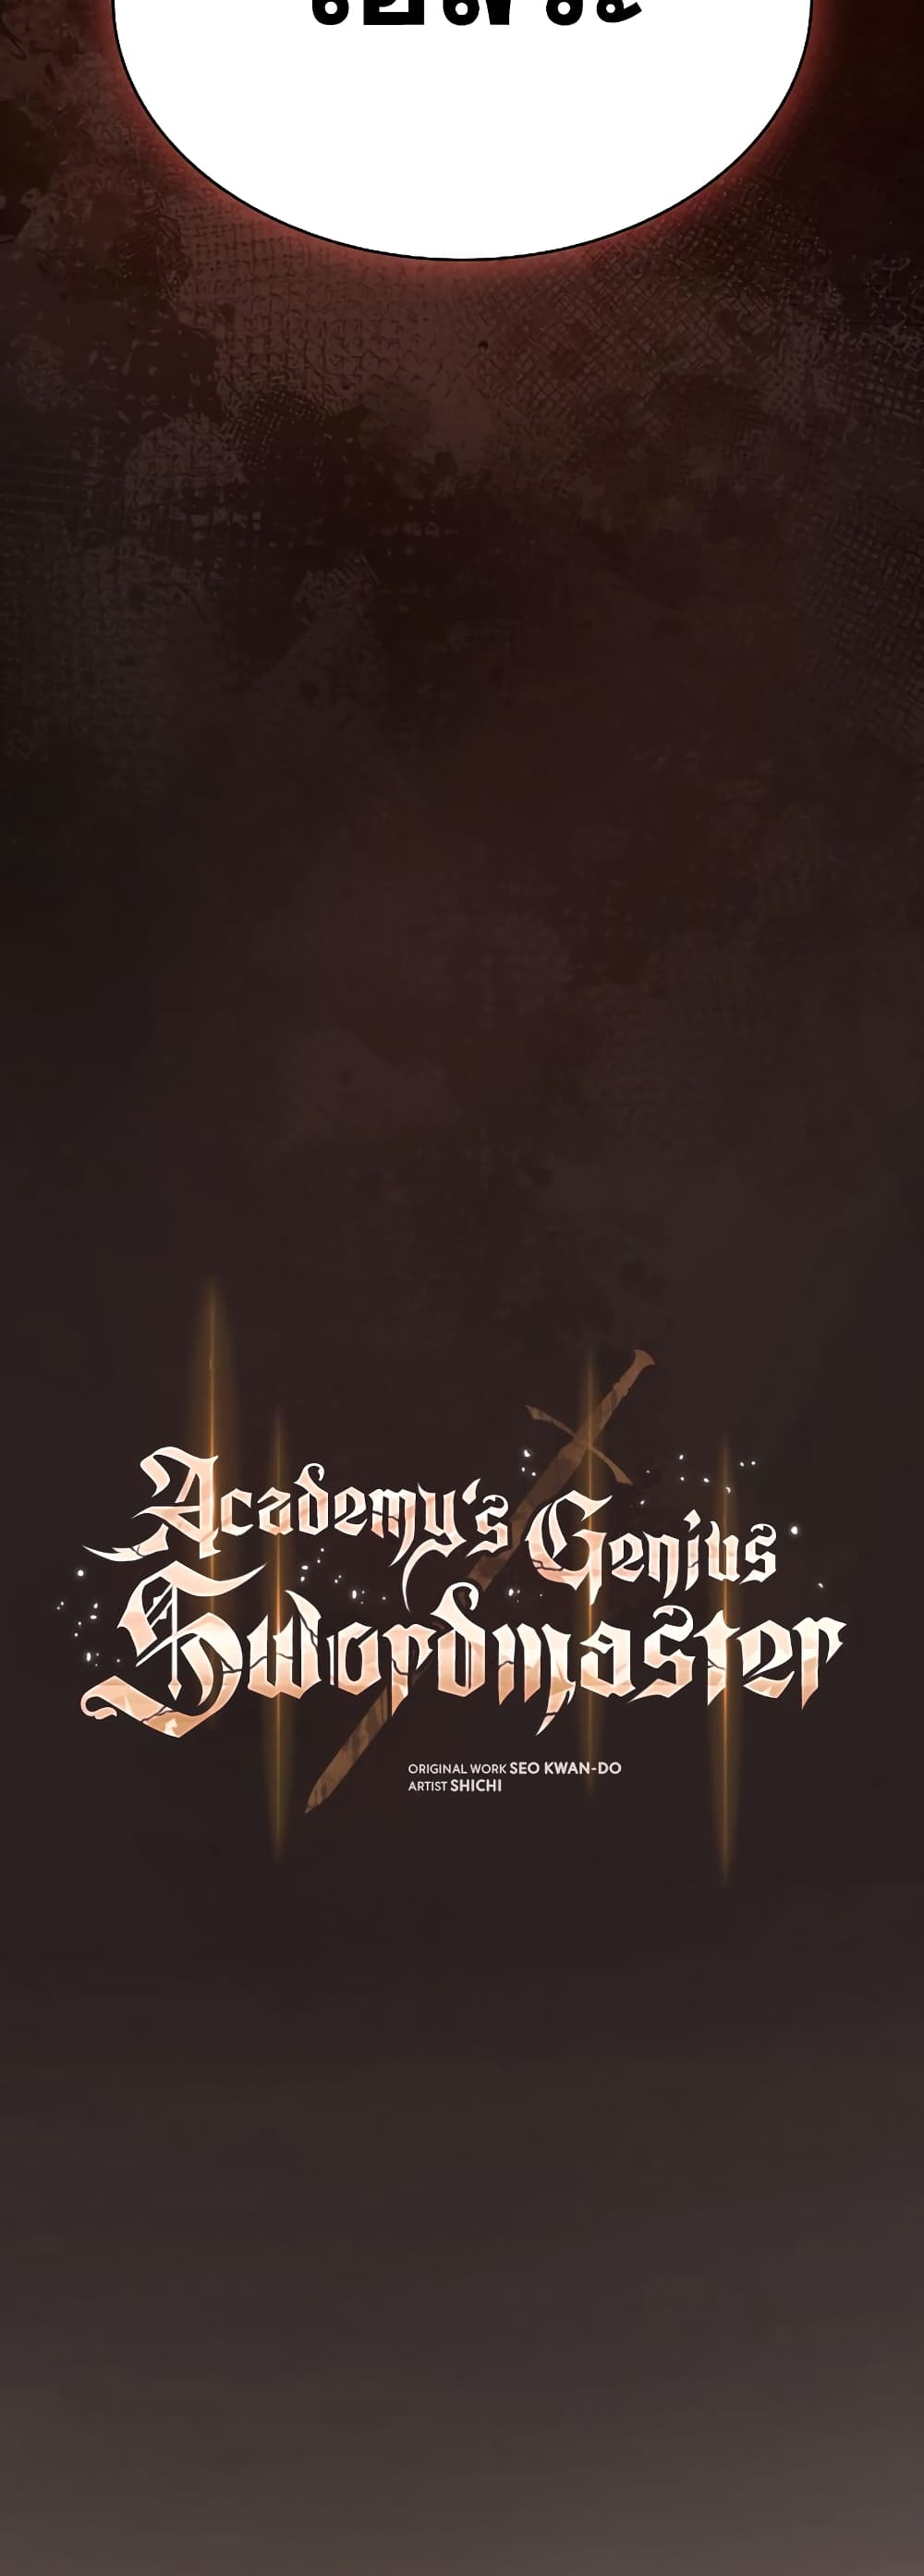 Academy’s Genius Swordmaster 27-27